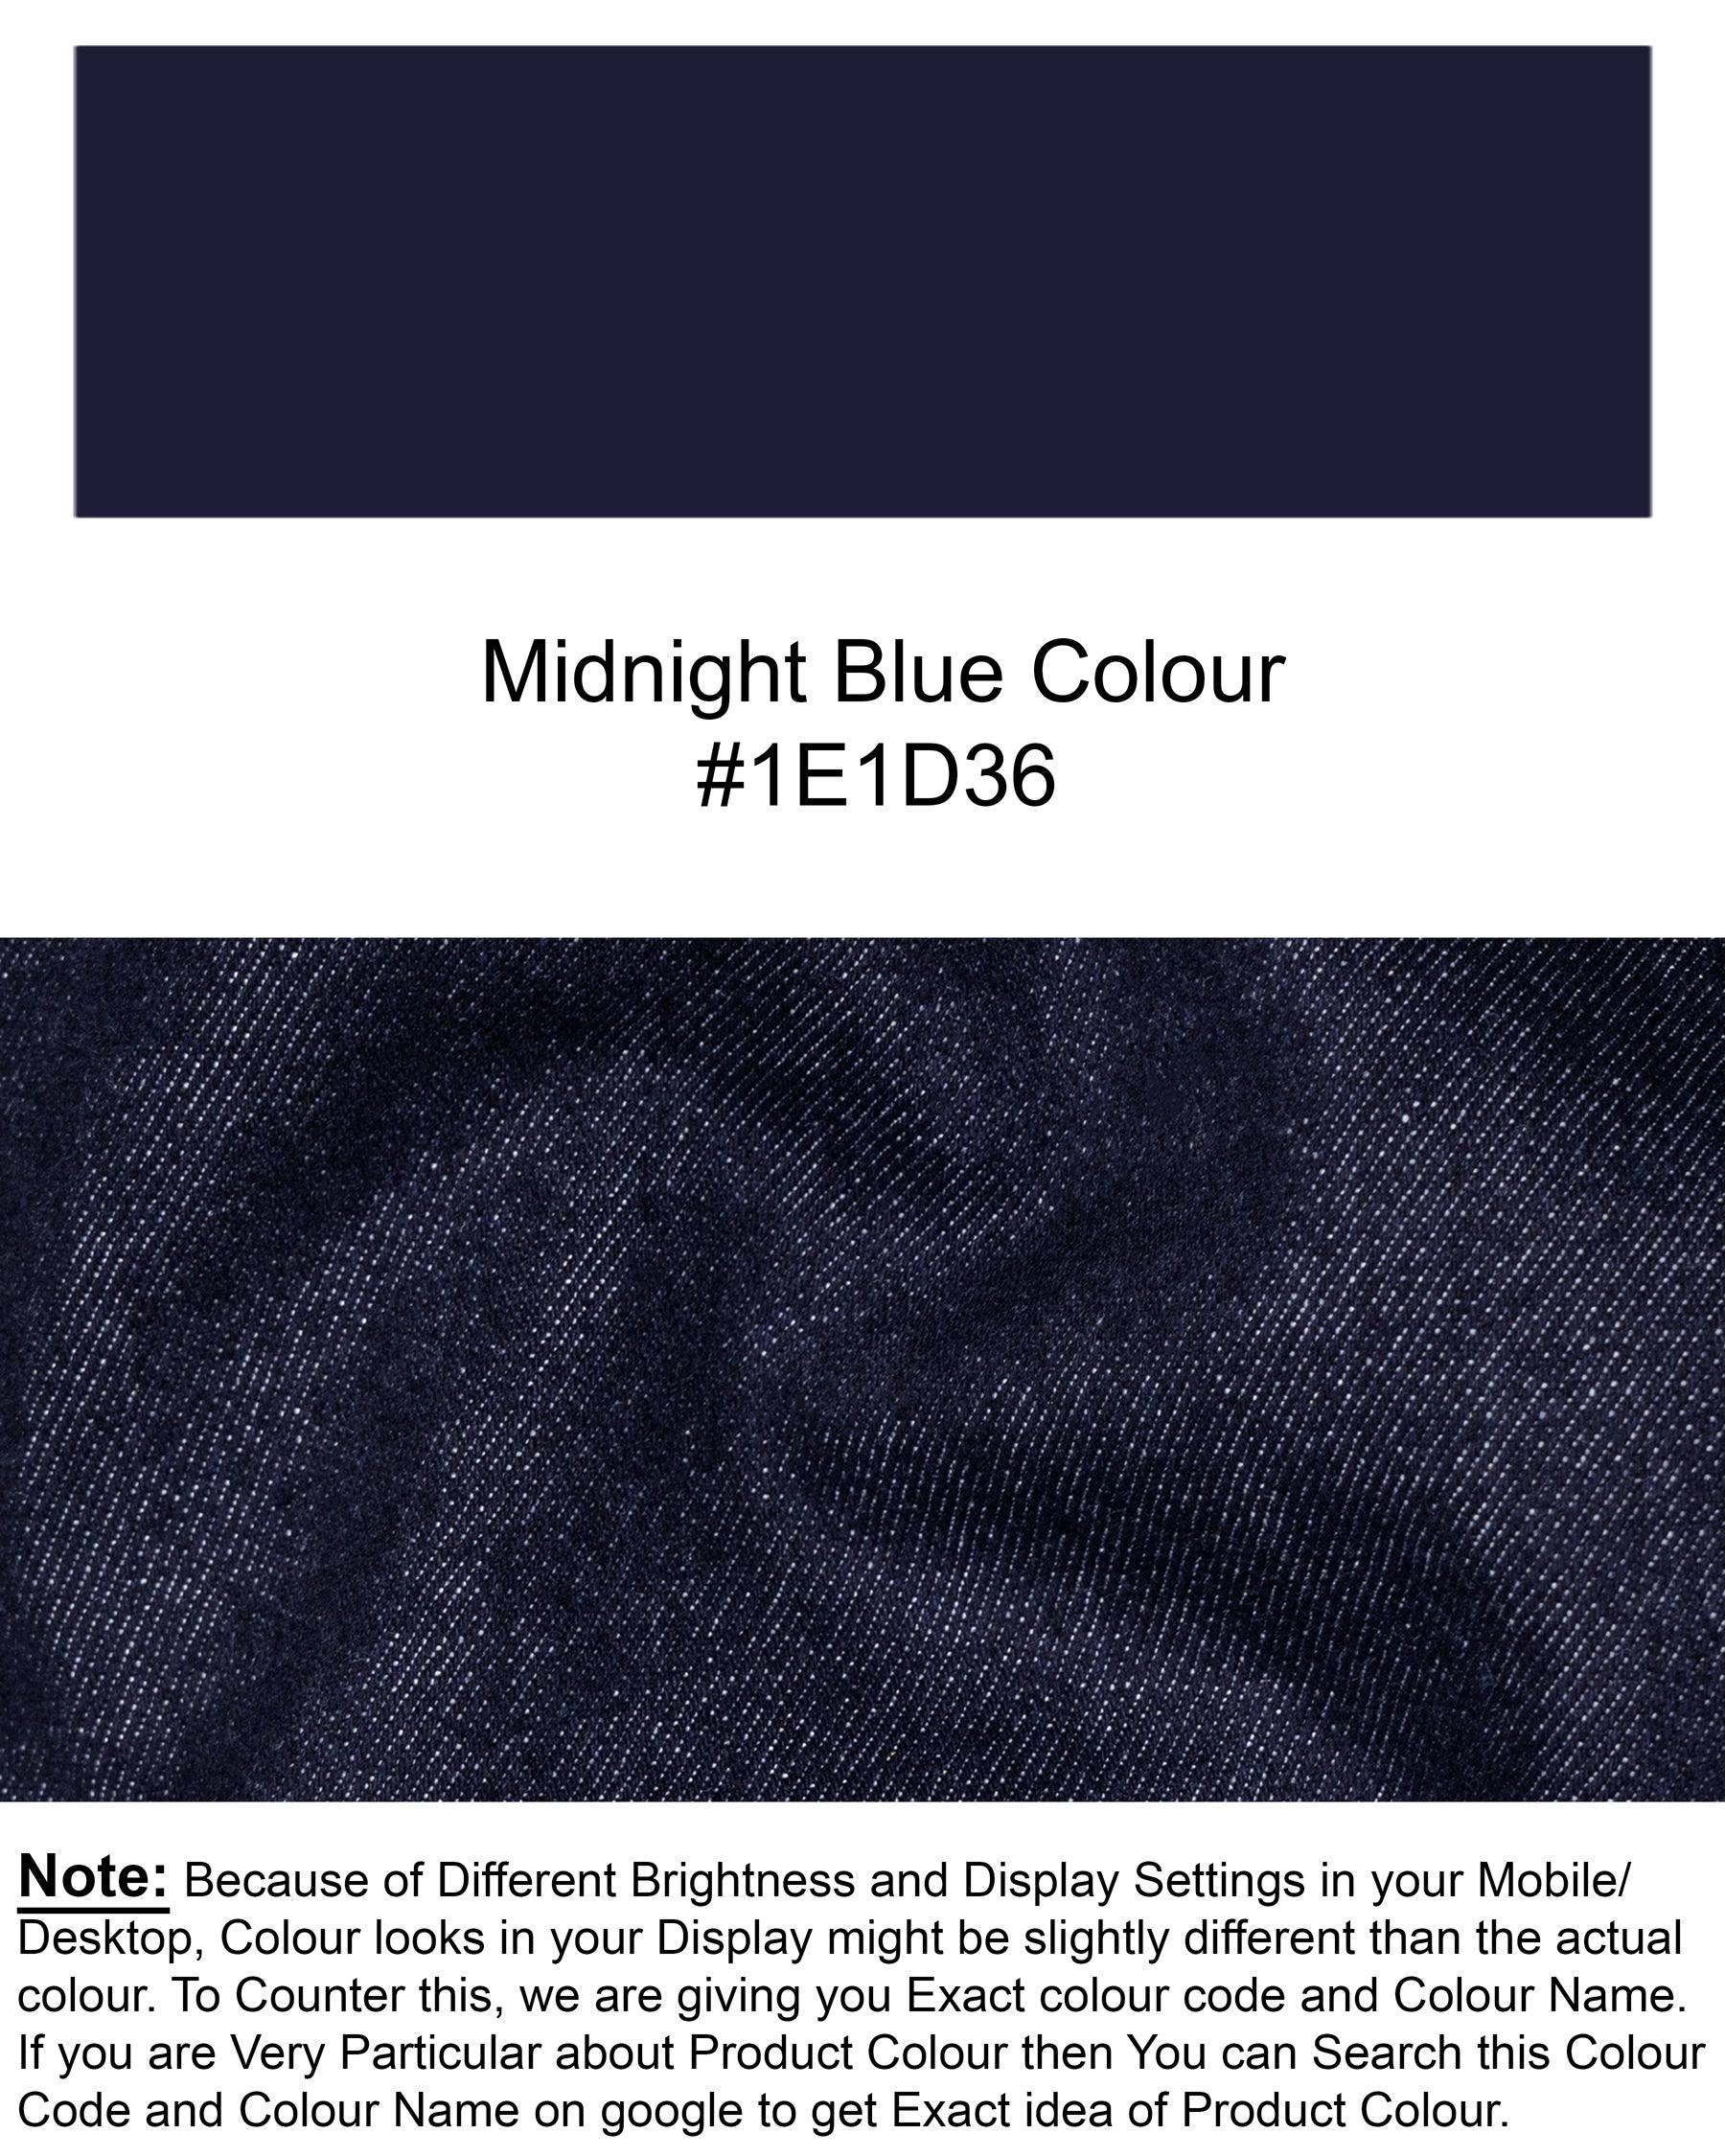 MIDNIGHT BLUE SLIM FIT MID-RISE CLEAN LOOK STRETCHABLE DENIM J87-30, J87-32, J87-34, J87-36, J87-38, J87-40